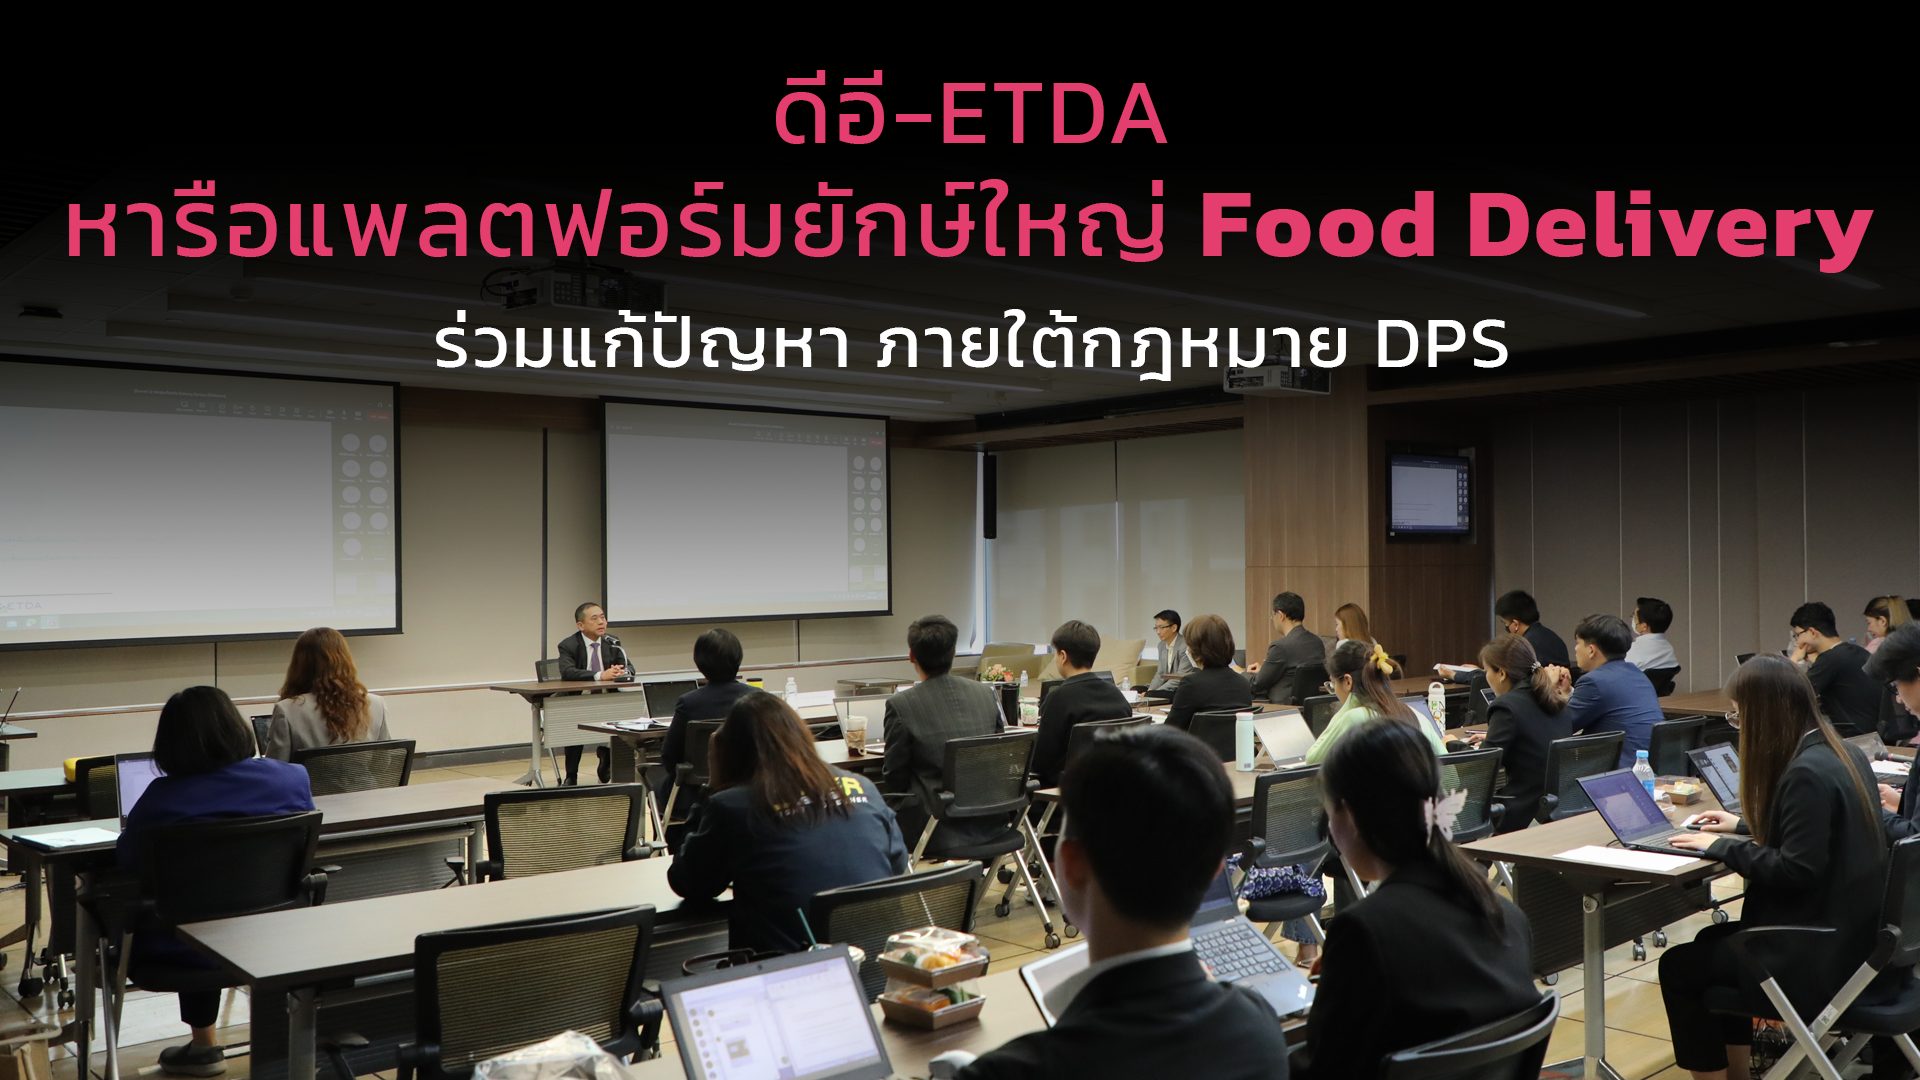 ดีอี-ETDA หารือแพลตฟอร์มยักษ์ใหญ่ Food Delivery ร่วมแก้ปัญหา ภายใต้กฎหมาย DPS